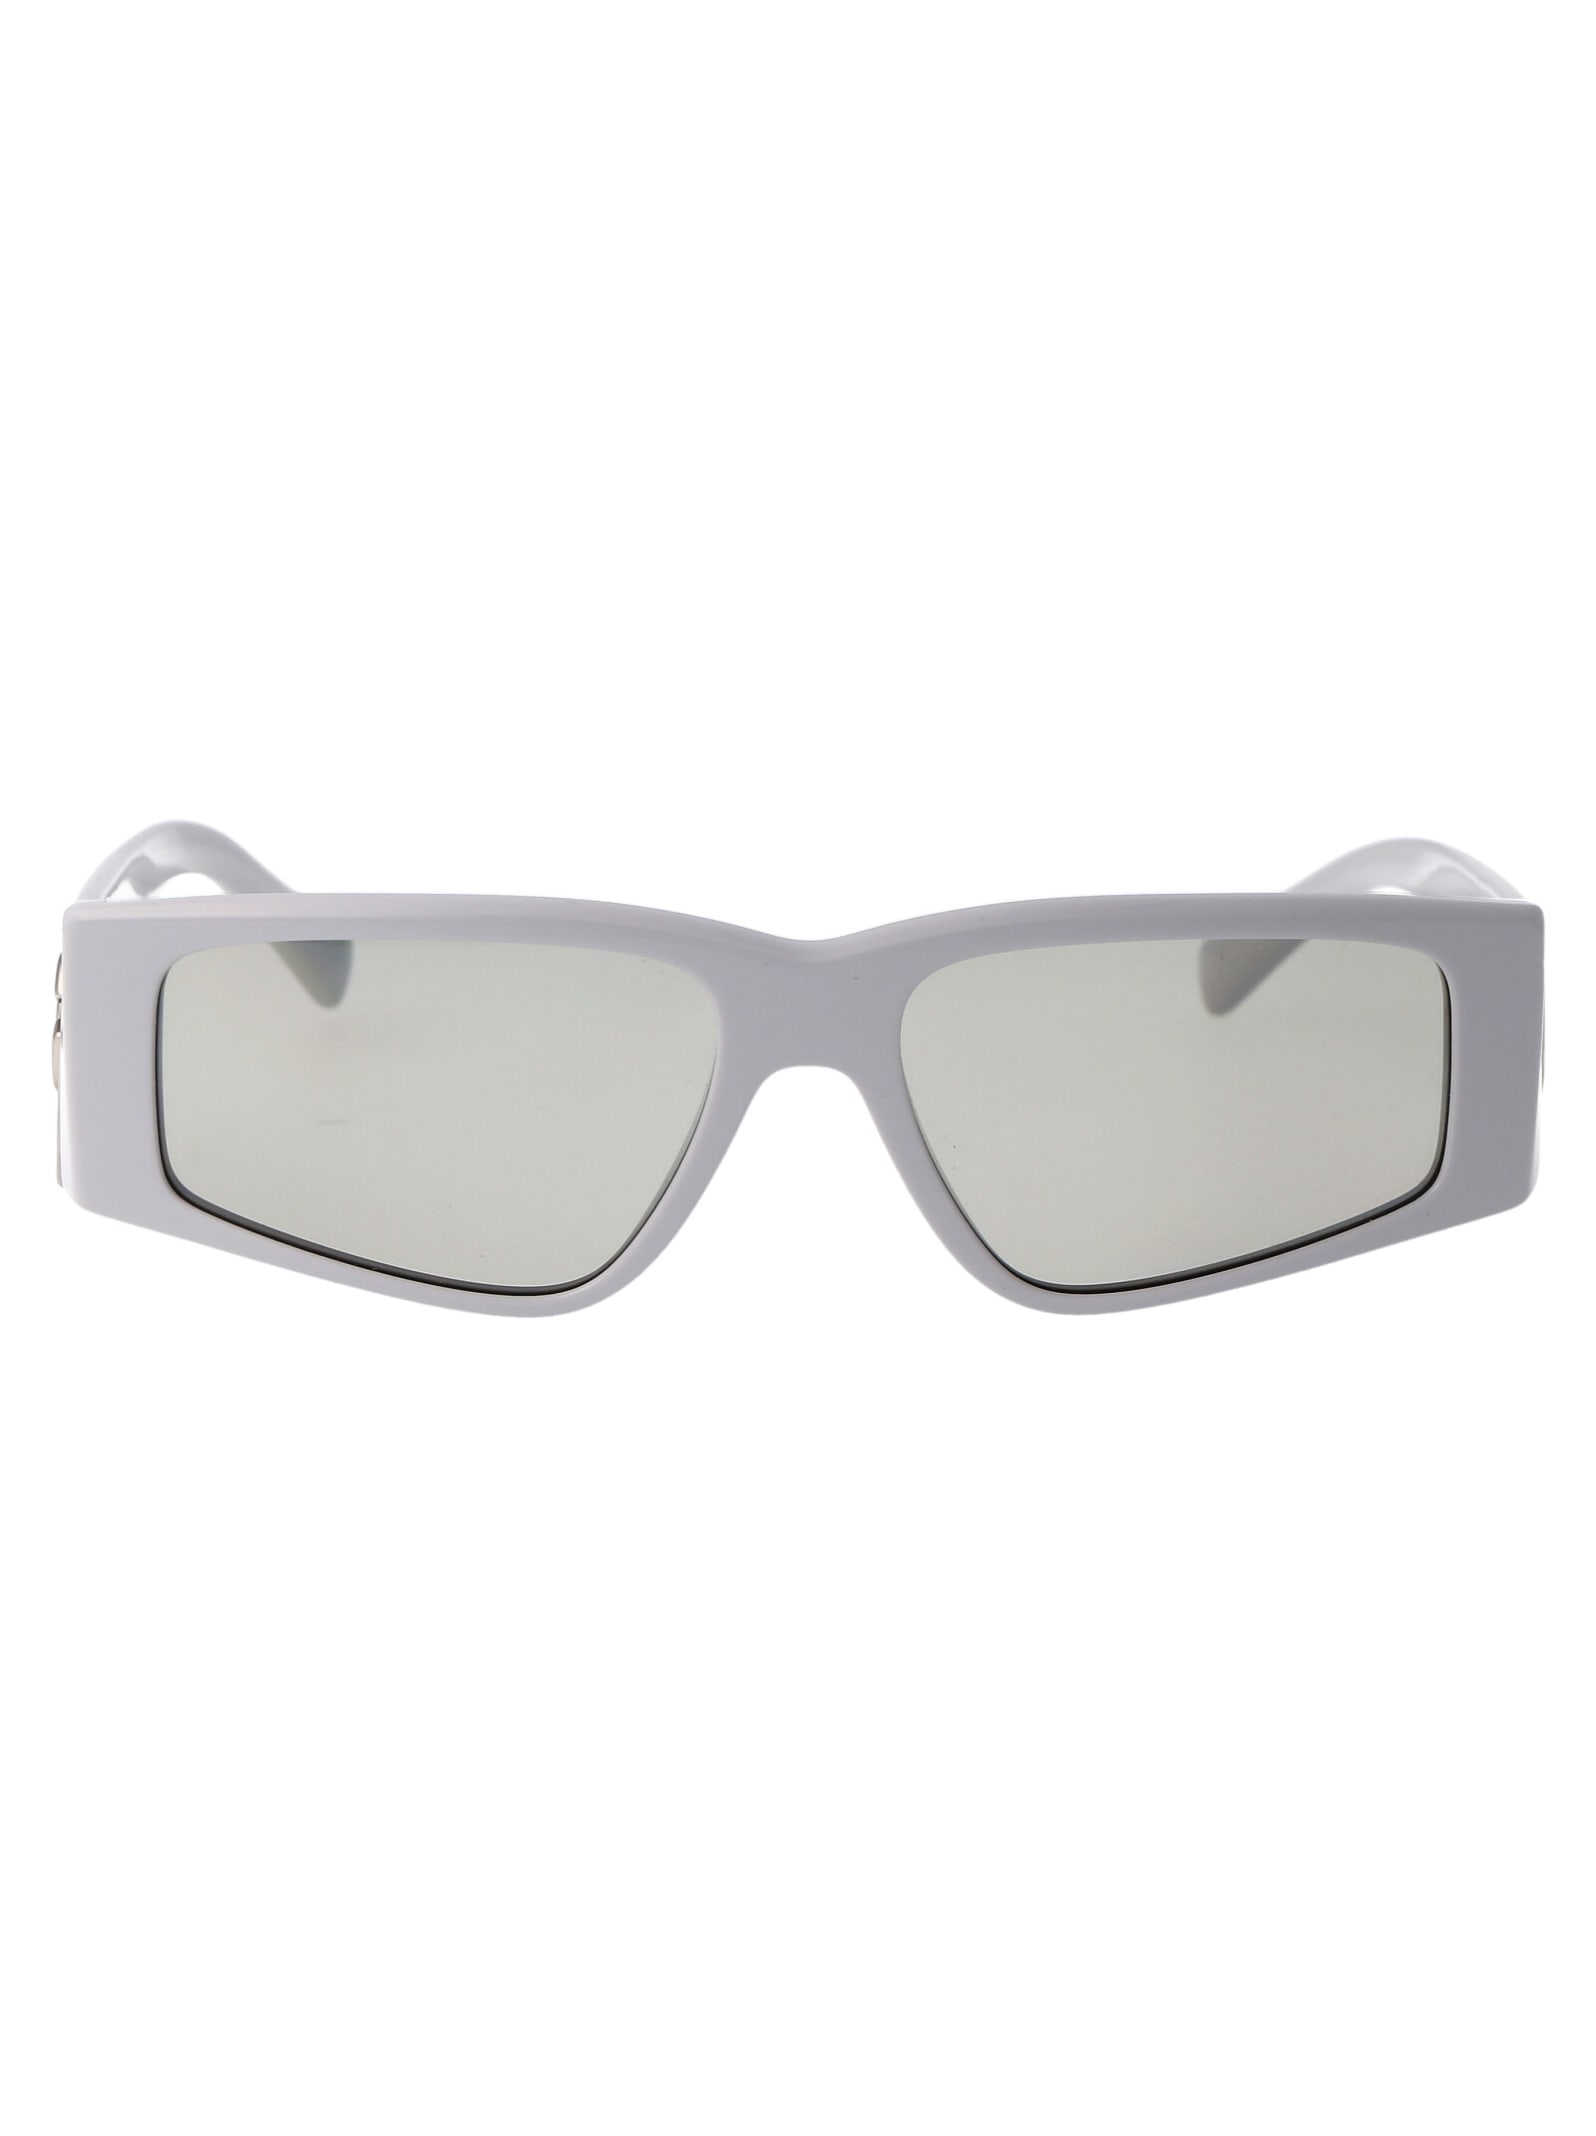 Dolce &amp; Gabbana Eyewear 0dg4453 Sunglasses In 341887 Light Grey